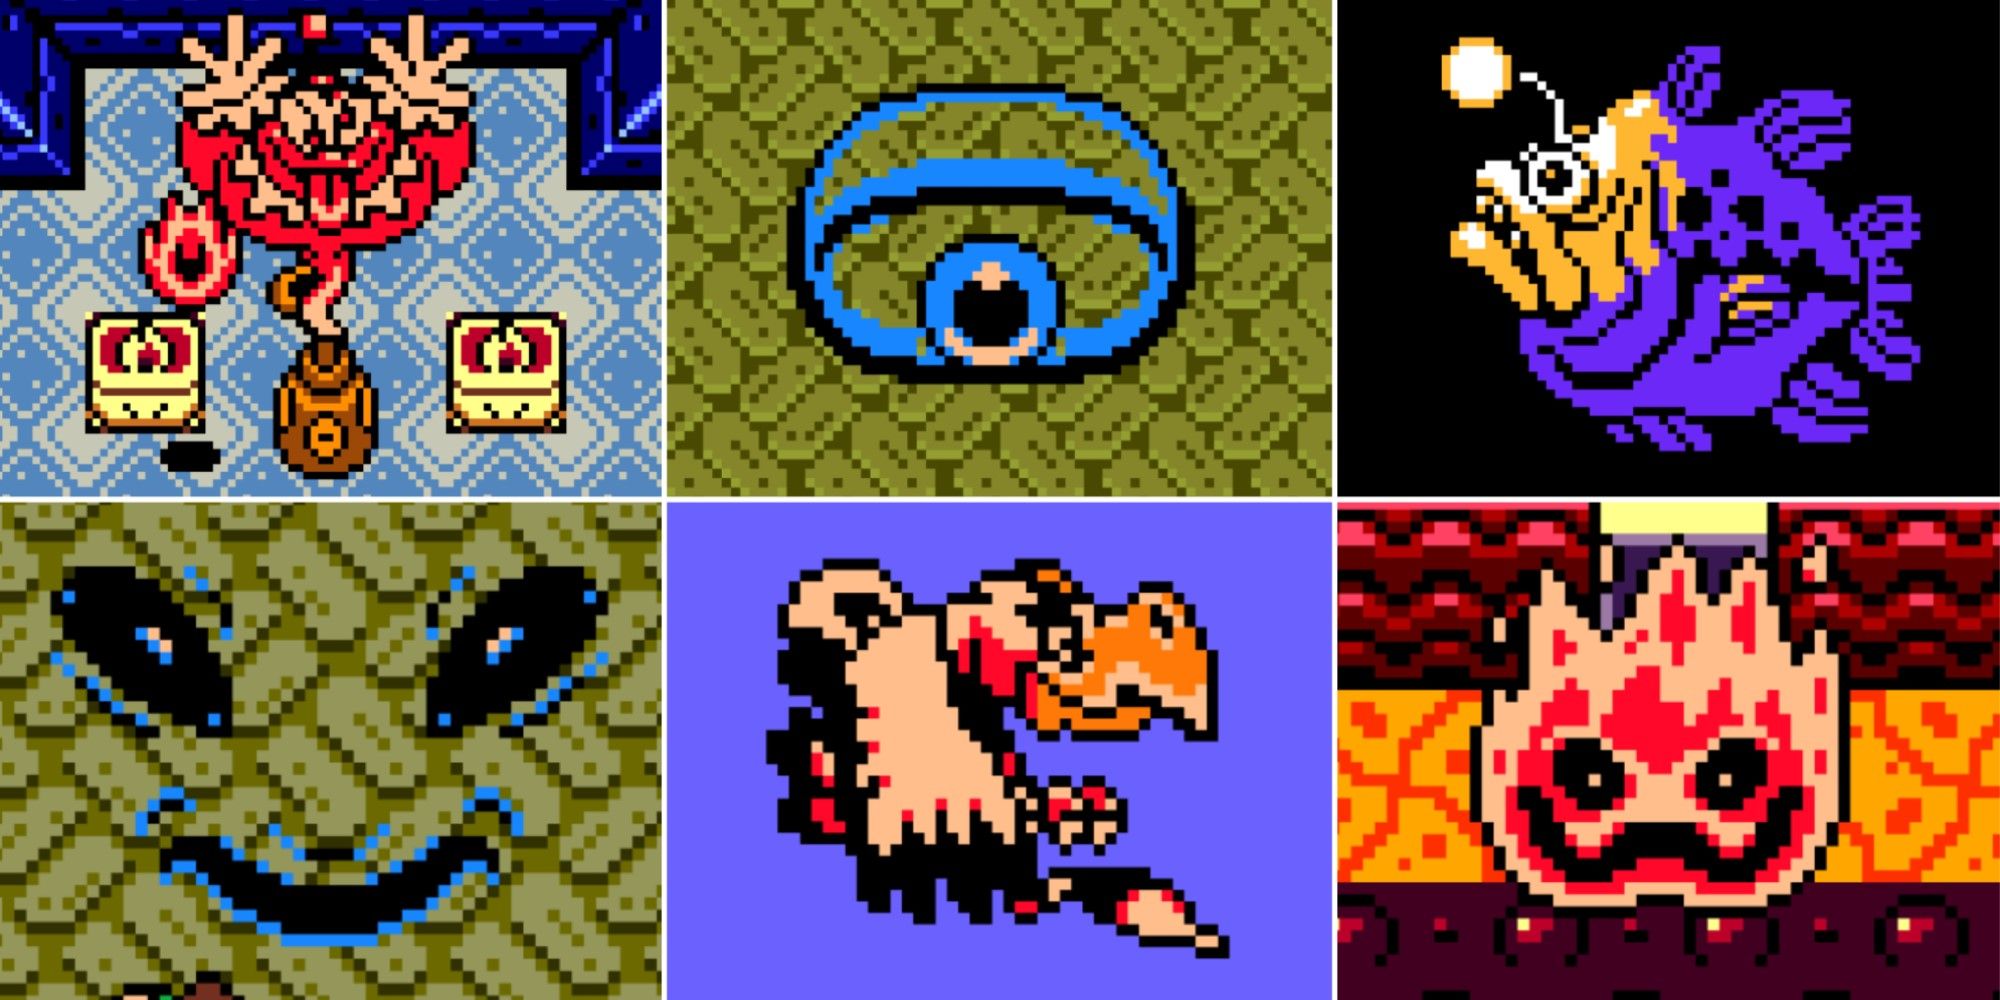 Six screenshots of different bosses in The Legend of Zelda: Link's Awakening.